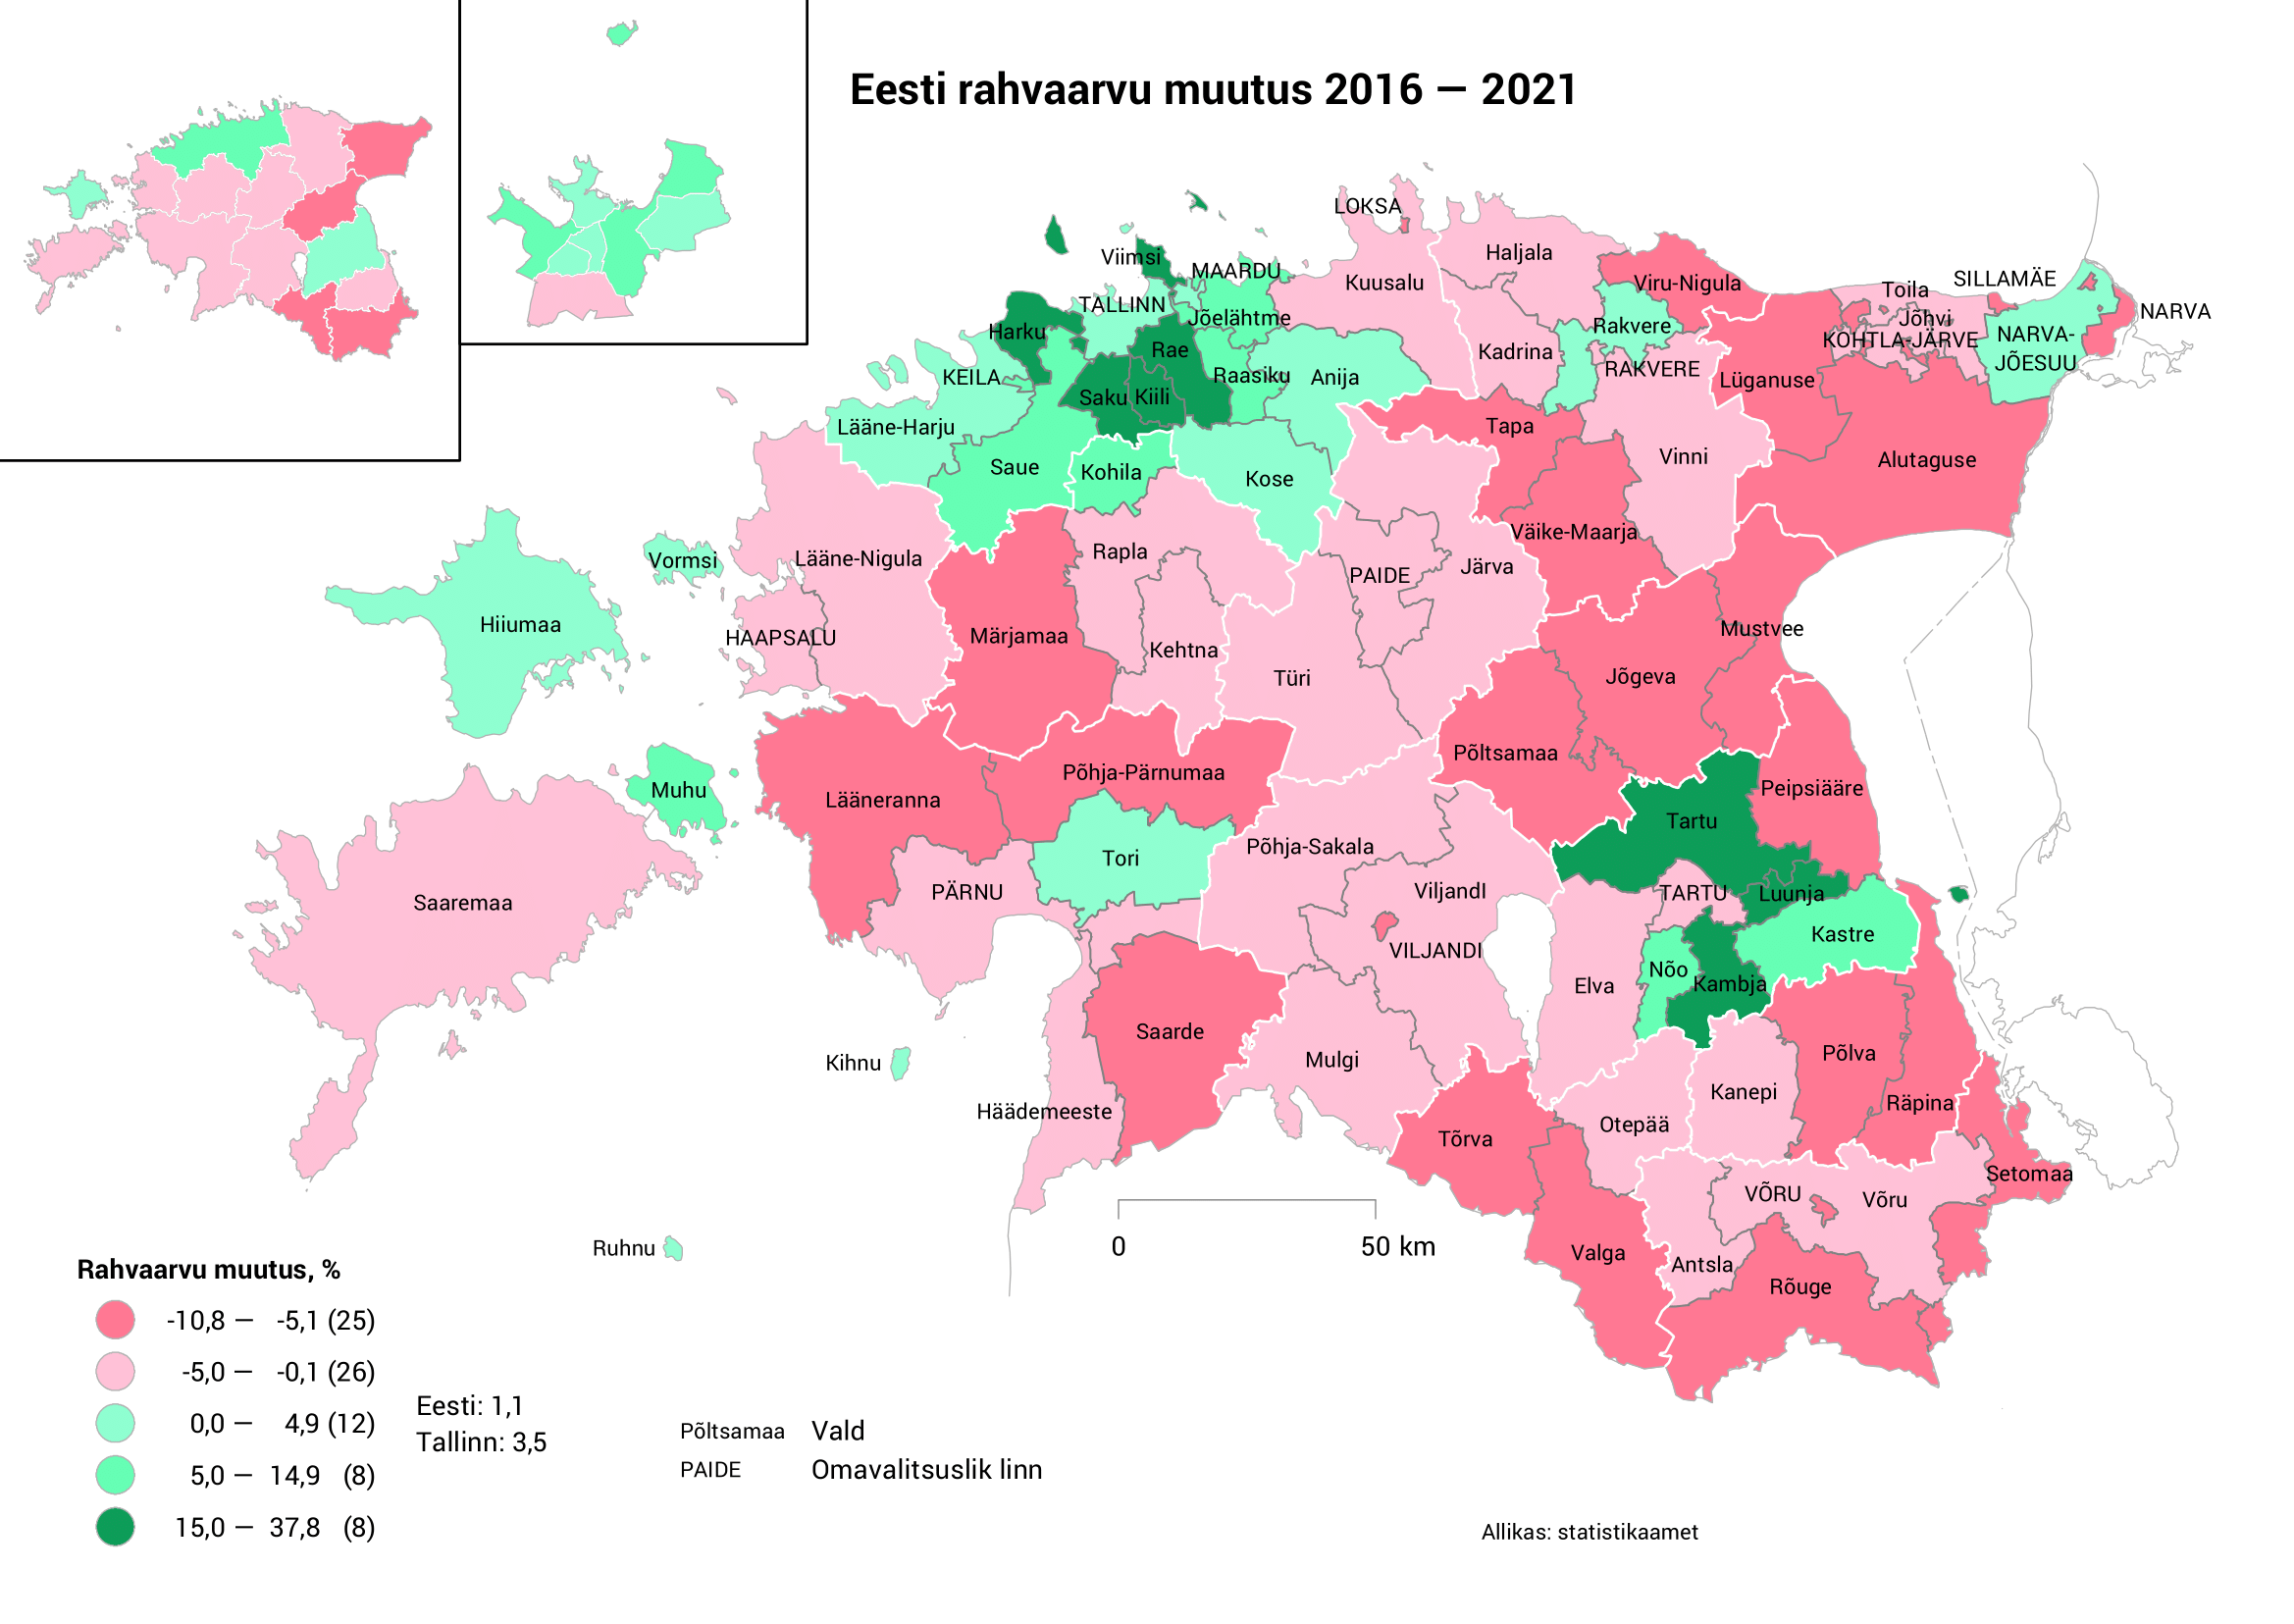 Eesti rahvaarvu muutus 2016–2021